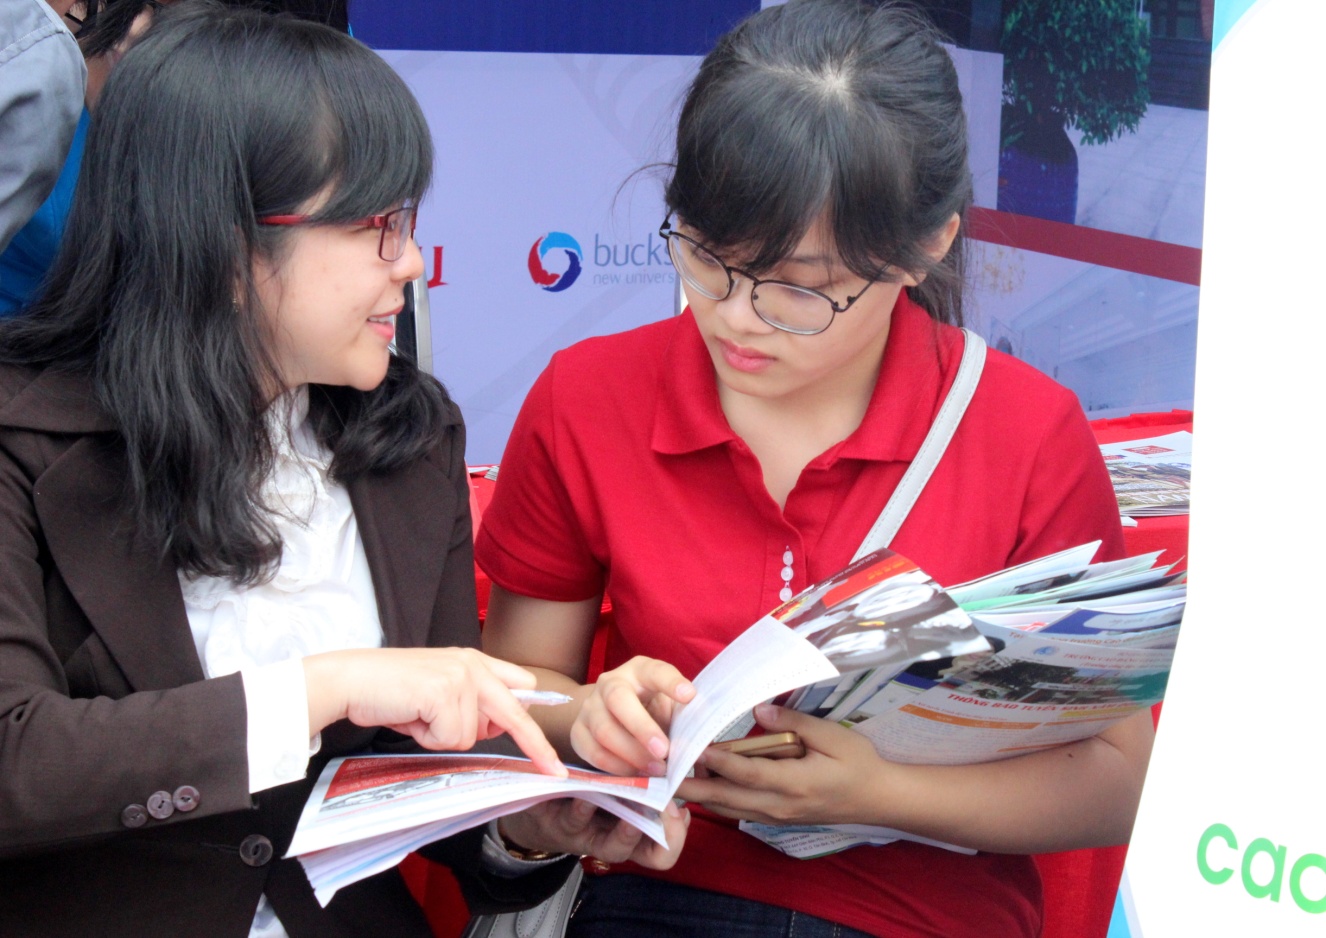 Trường Đại học Quốc tế Sài Gòn tham dự Ngày hội Tư vấn tuyển sinh Báo Tuổi trẻ 2016